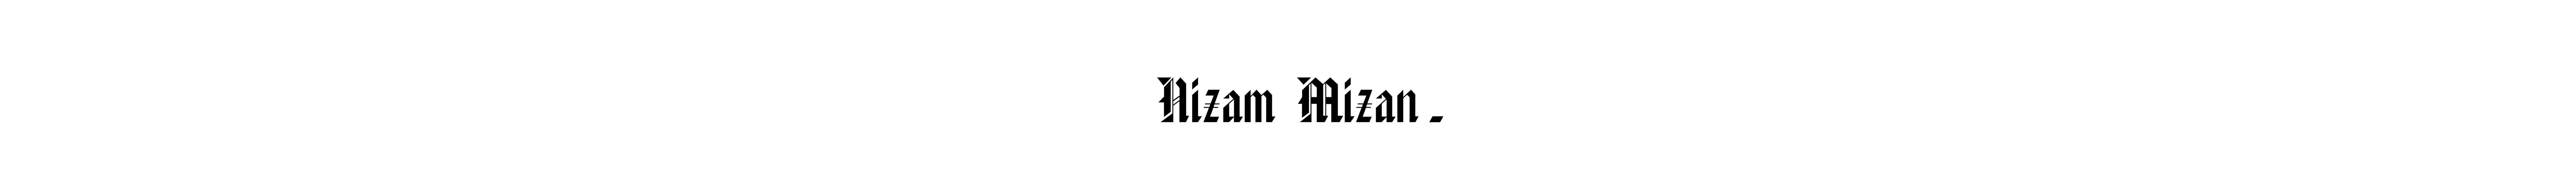 Nizam Mizan's profile banner